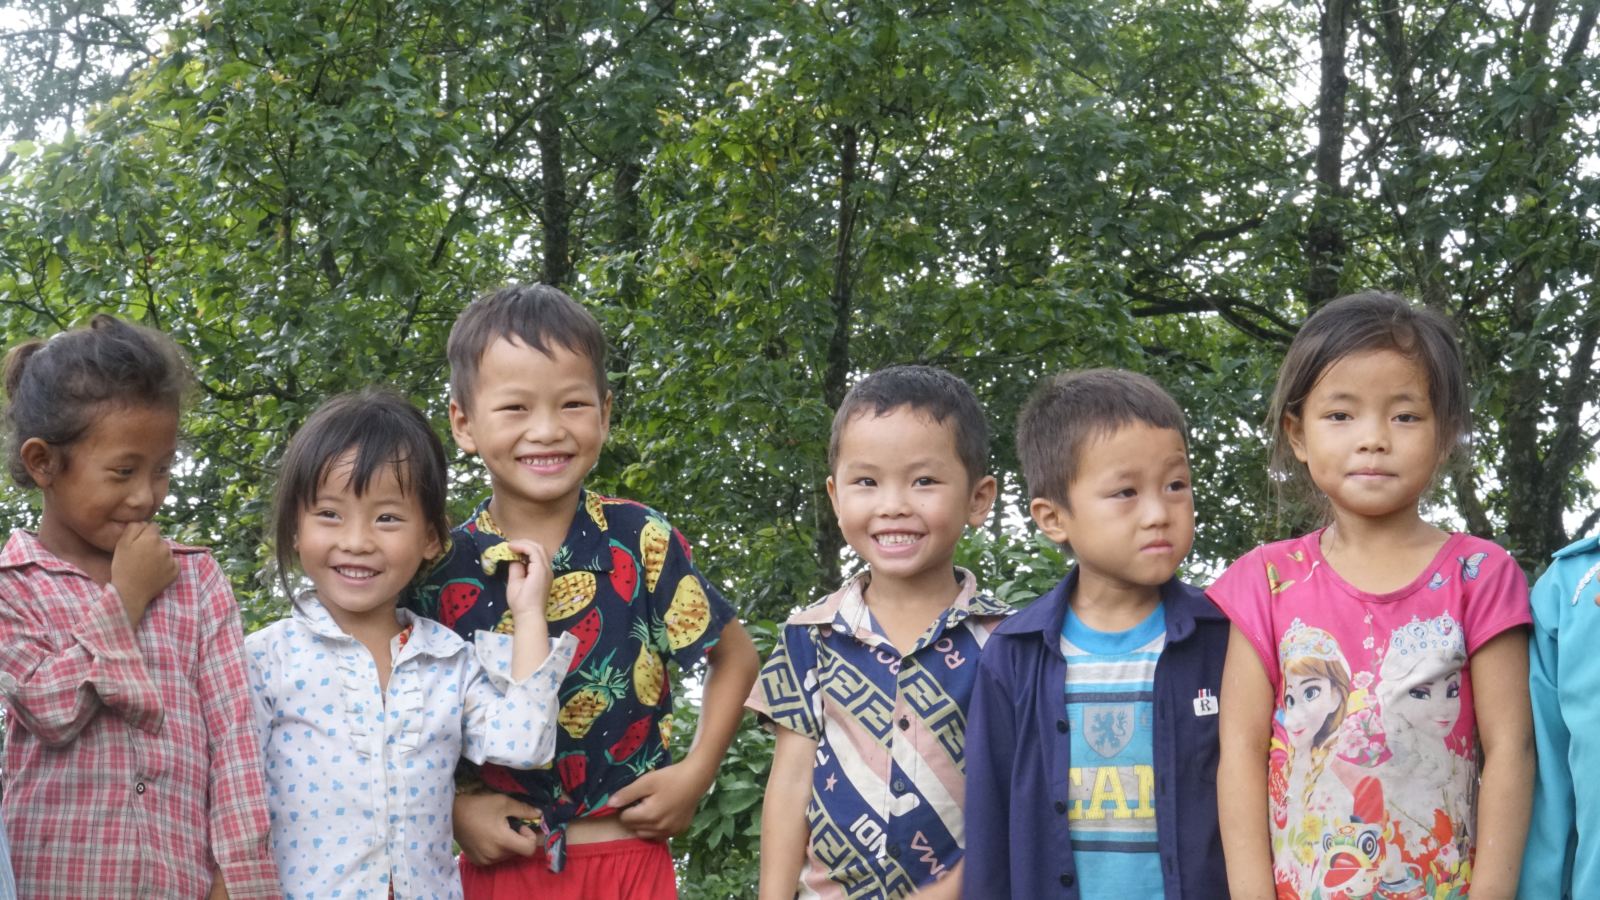 Cập nhật dự án “Cùng em khôn lớn”: Chuyến khảo sát thực địa tại điểm trường Khau Noong và Nà Ó